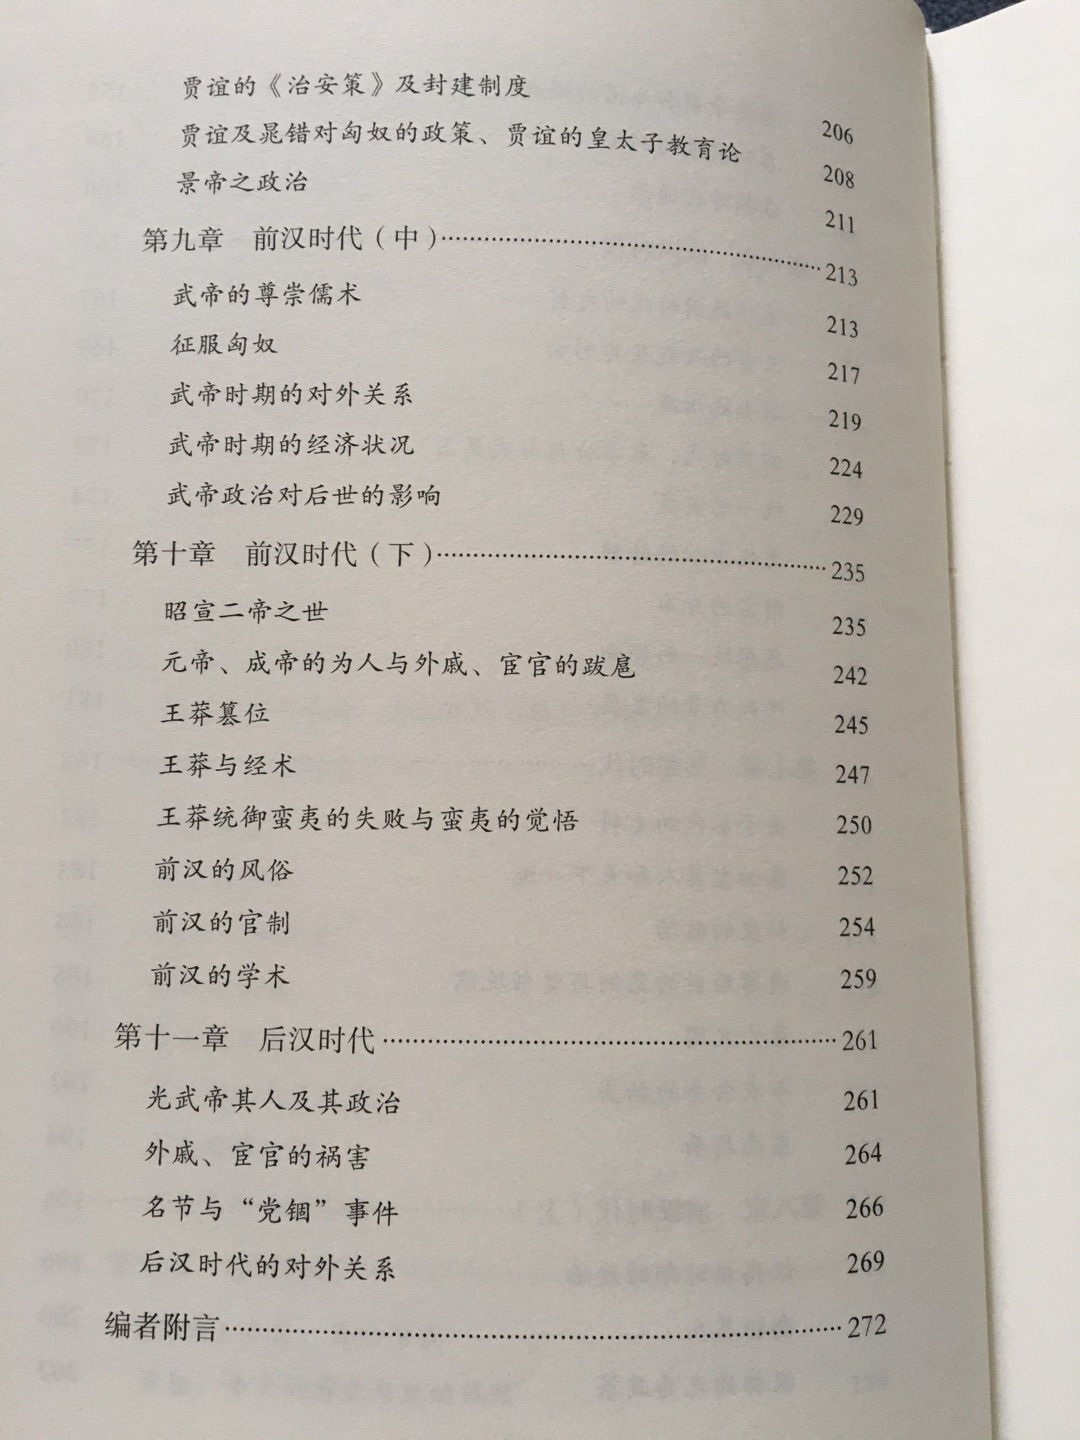 内藤湖南日本中国史大家，看过他的弟子宫崎市定的书，所以也买来拜读一下。保护壳挺硬，书本质量也不错，价格小贵。